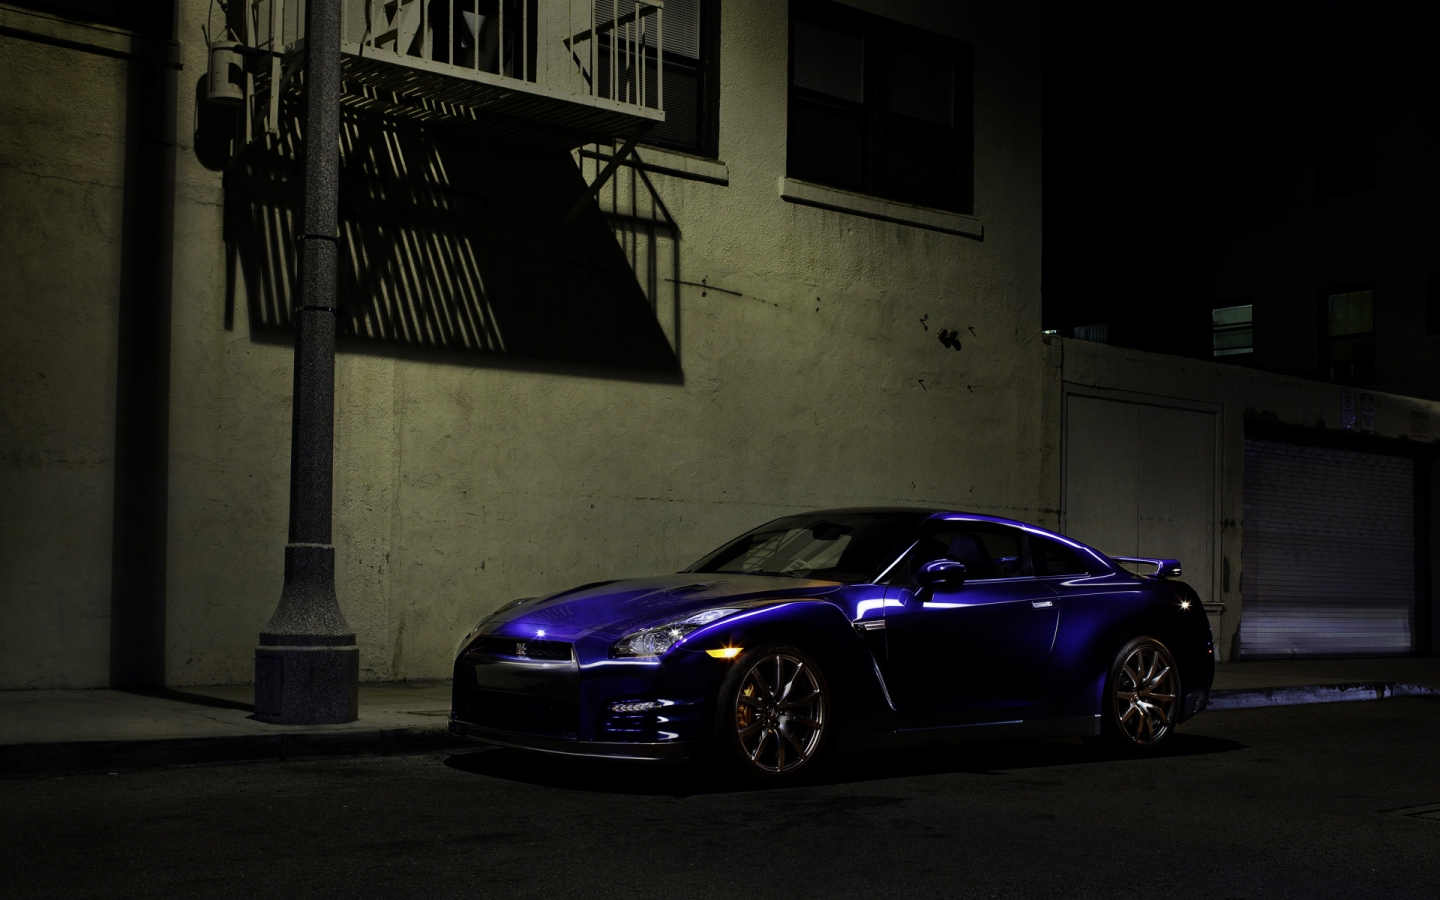 2012 Nissan GTR for 1440 x 900 widescreen resolution